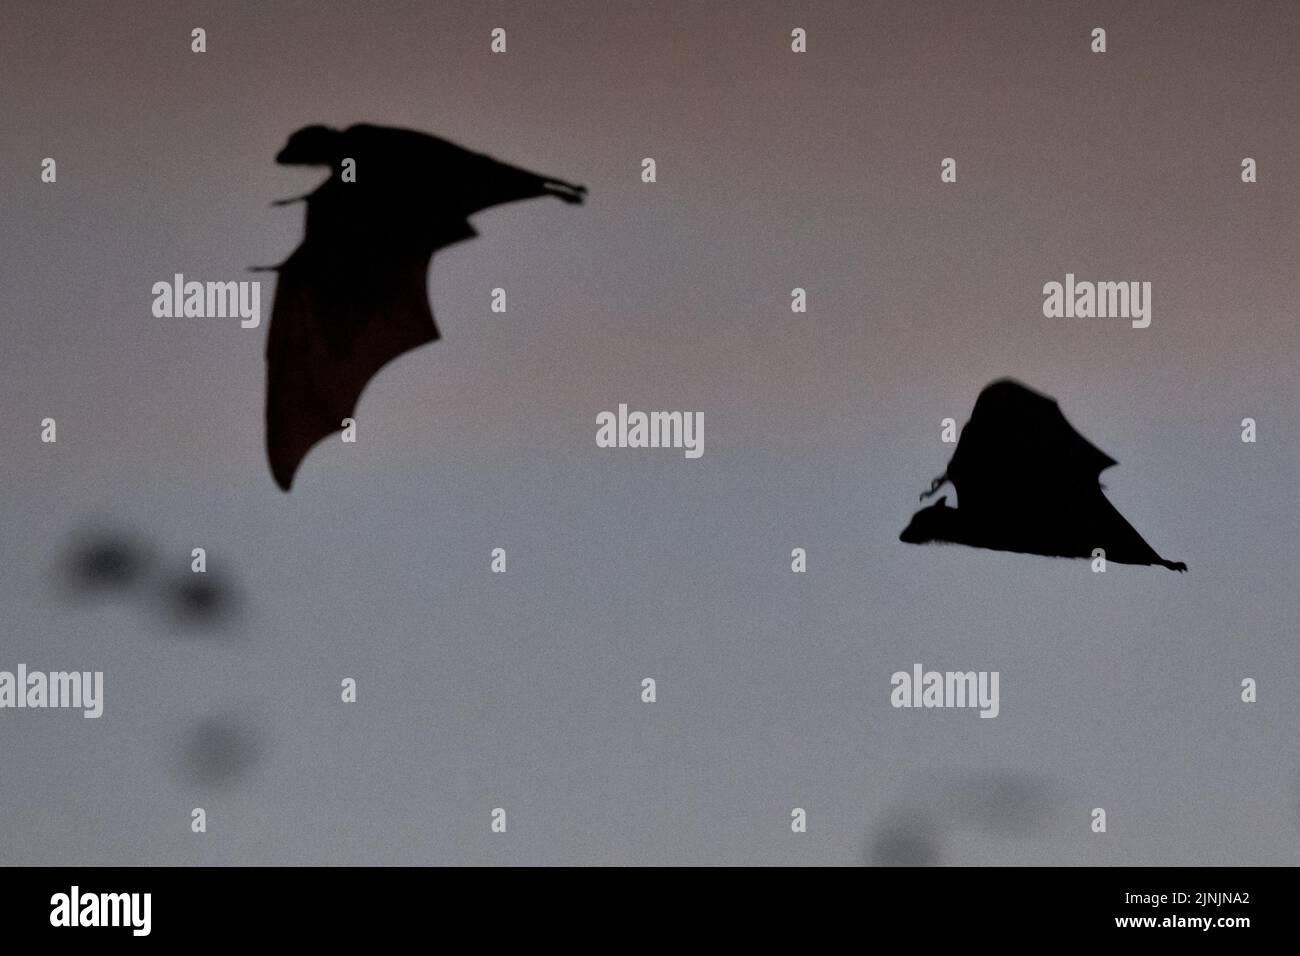 Murciélago de fruta negra, zorro volador negro (Pteropus alecto), murciélagos de fruta negra en vuelo en el cielo nocturno, silueta, Australia, Territorio del Norte, Nitmilu Foto de stock